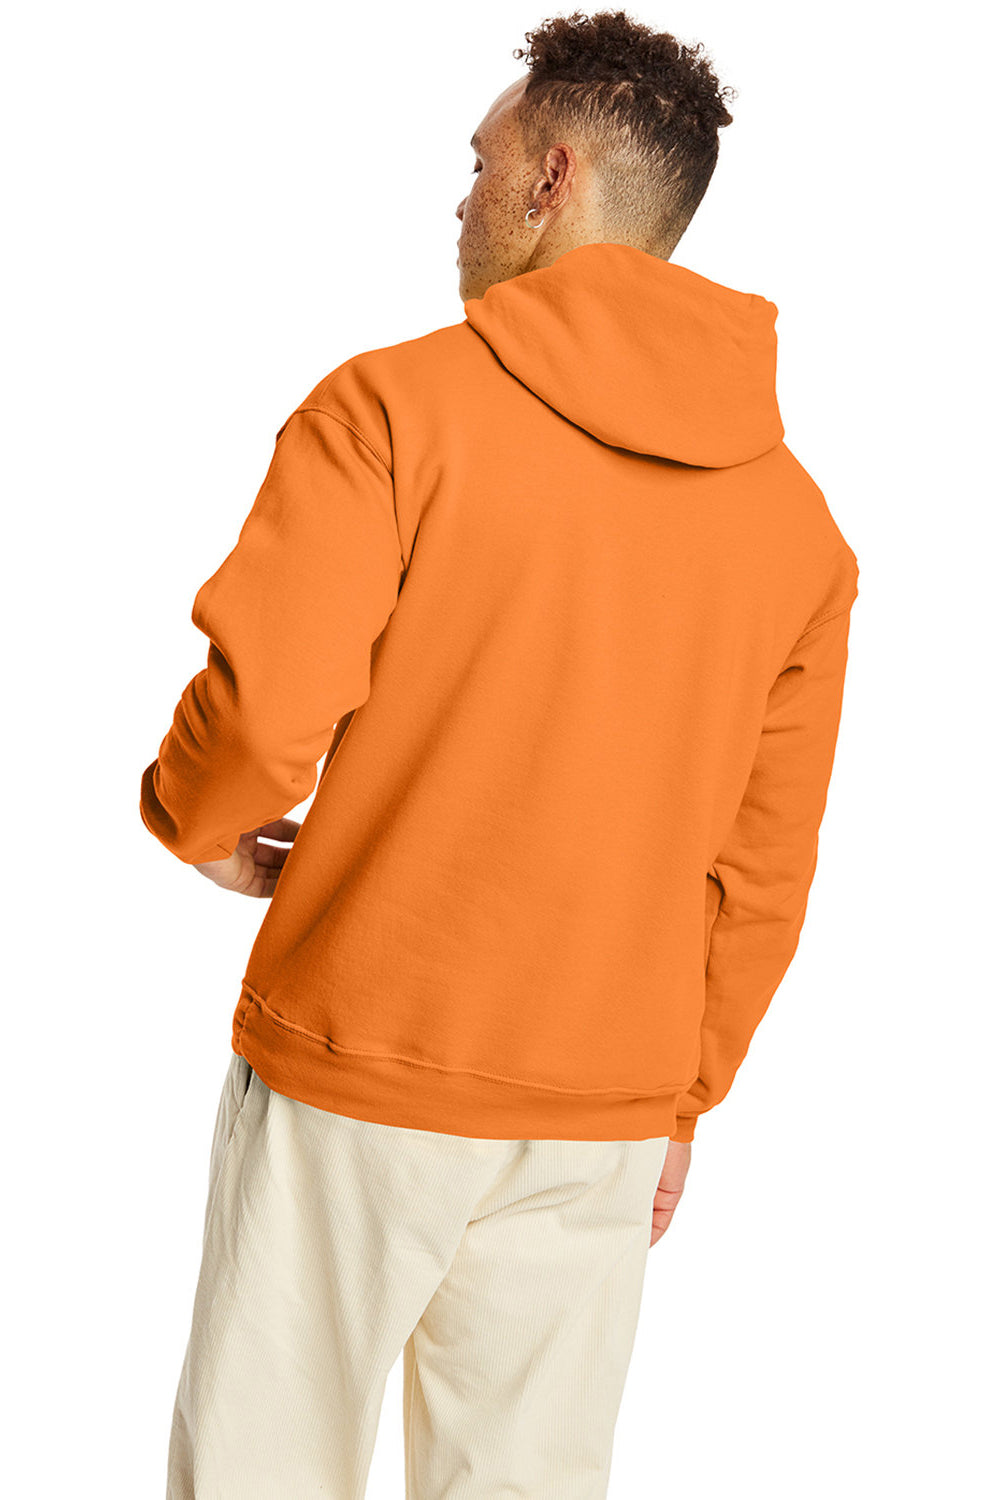 Hanes P170 Mens EcoSmart Print Pro XP Hooded Sweatshirt Hoodie Tennessee Orange Back